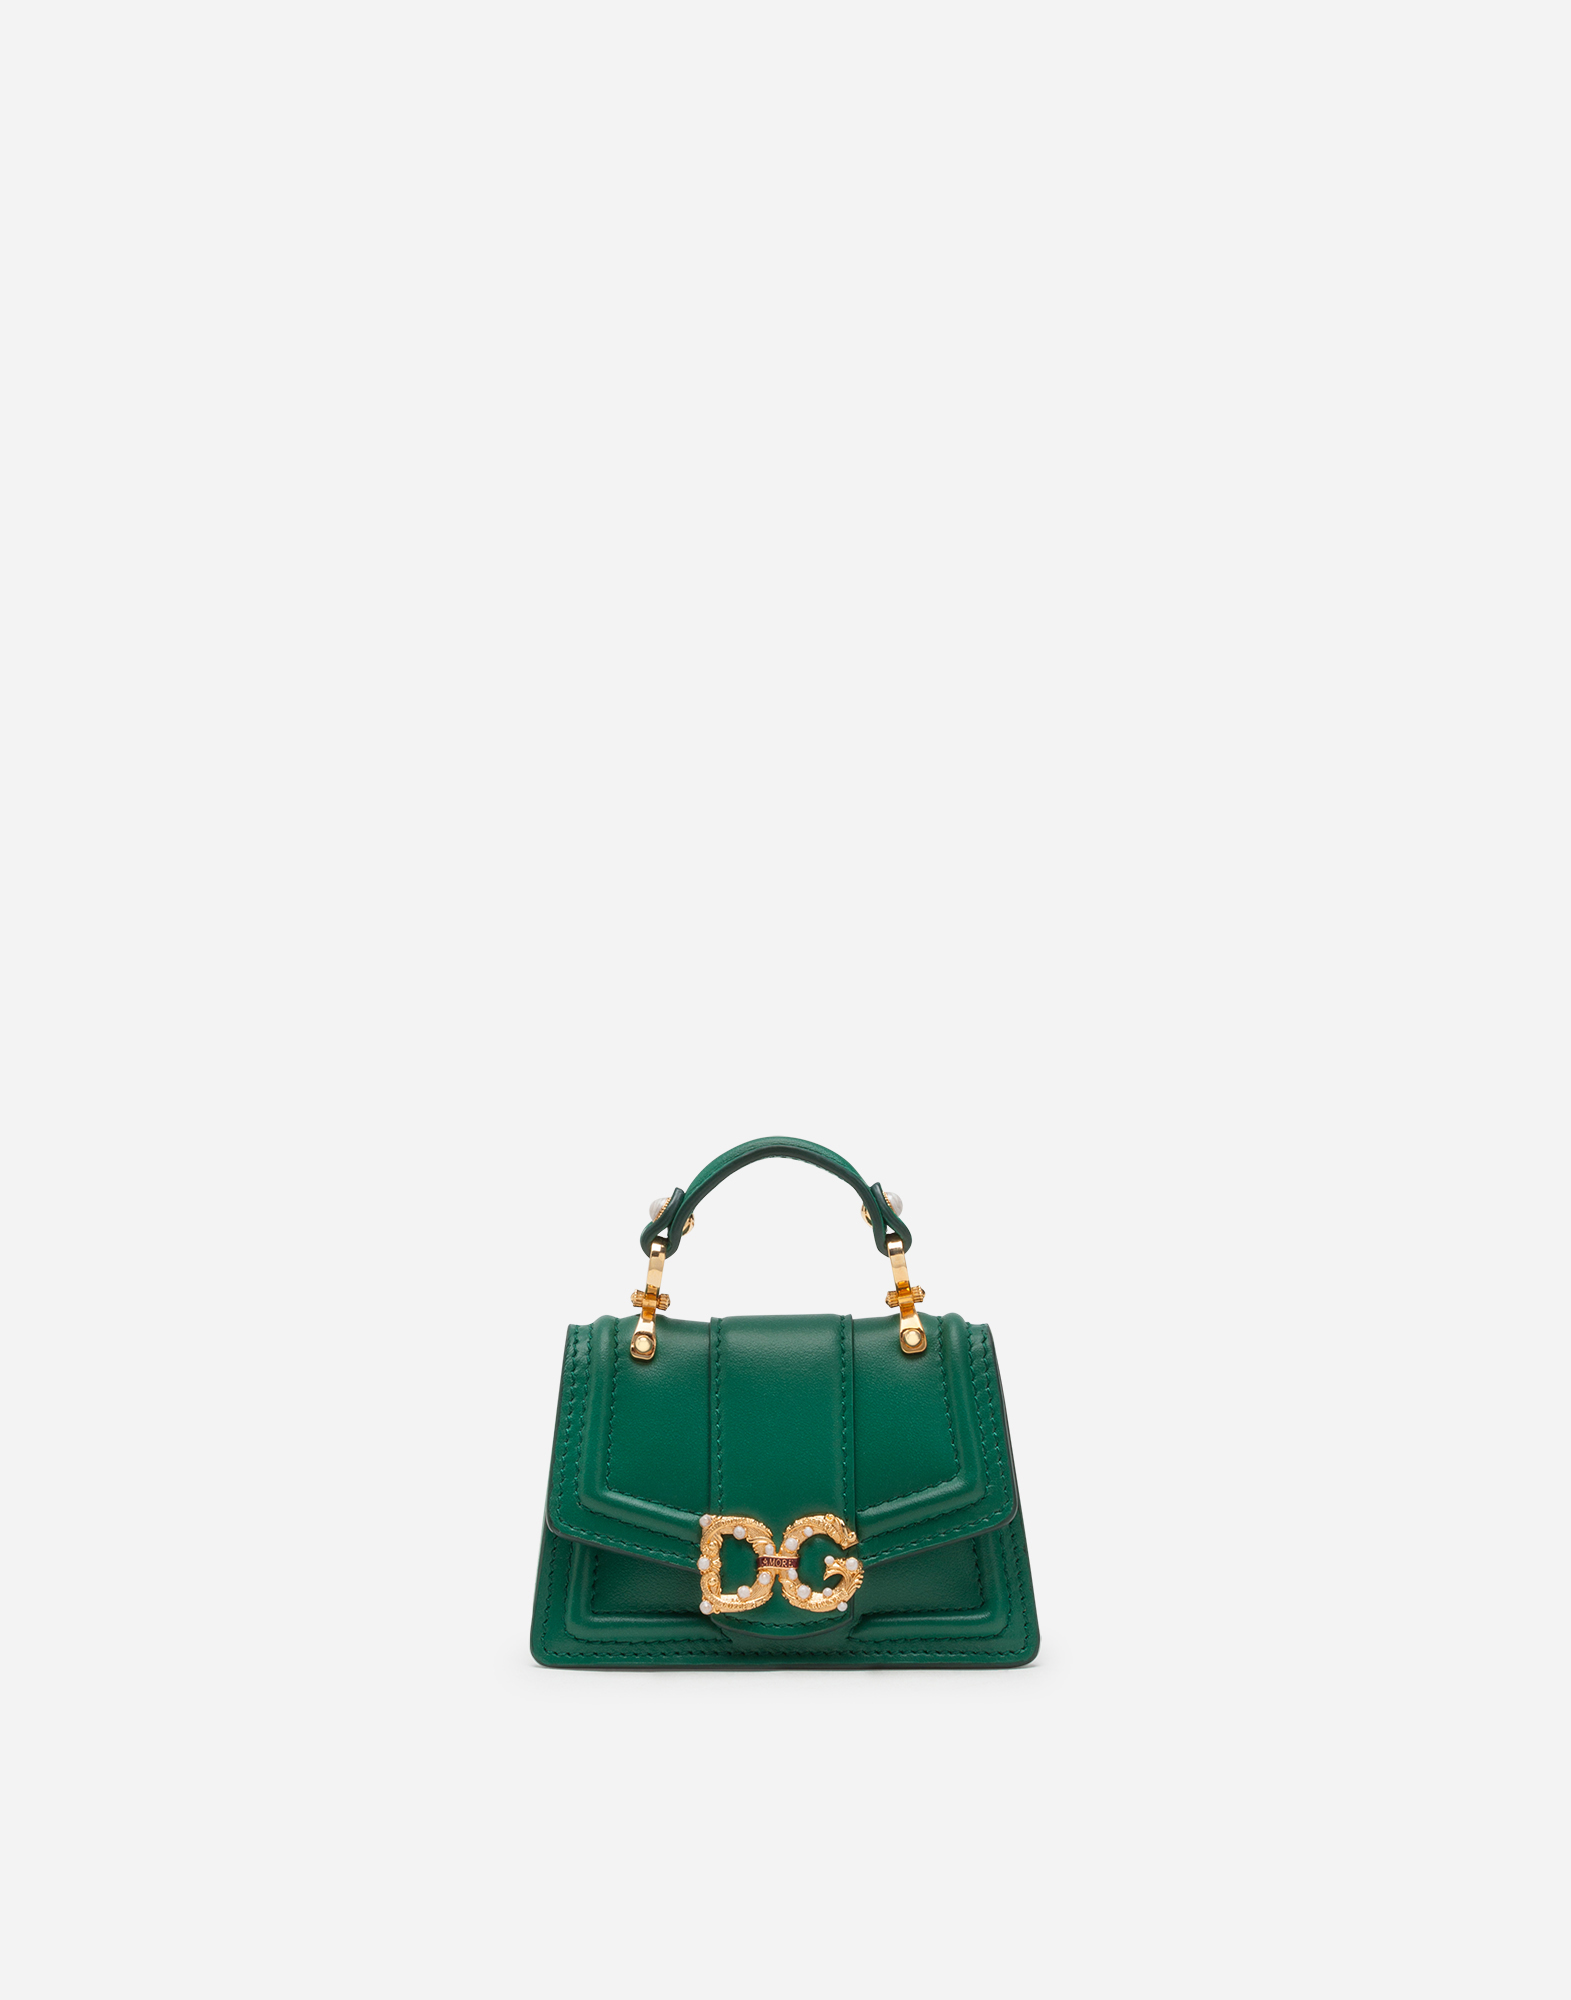 d&g green bag